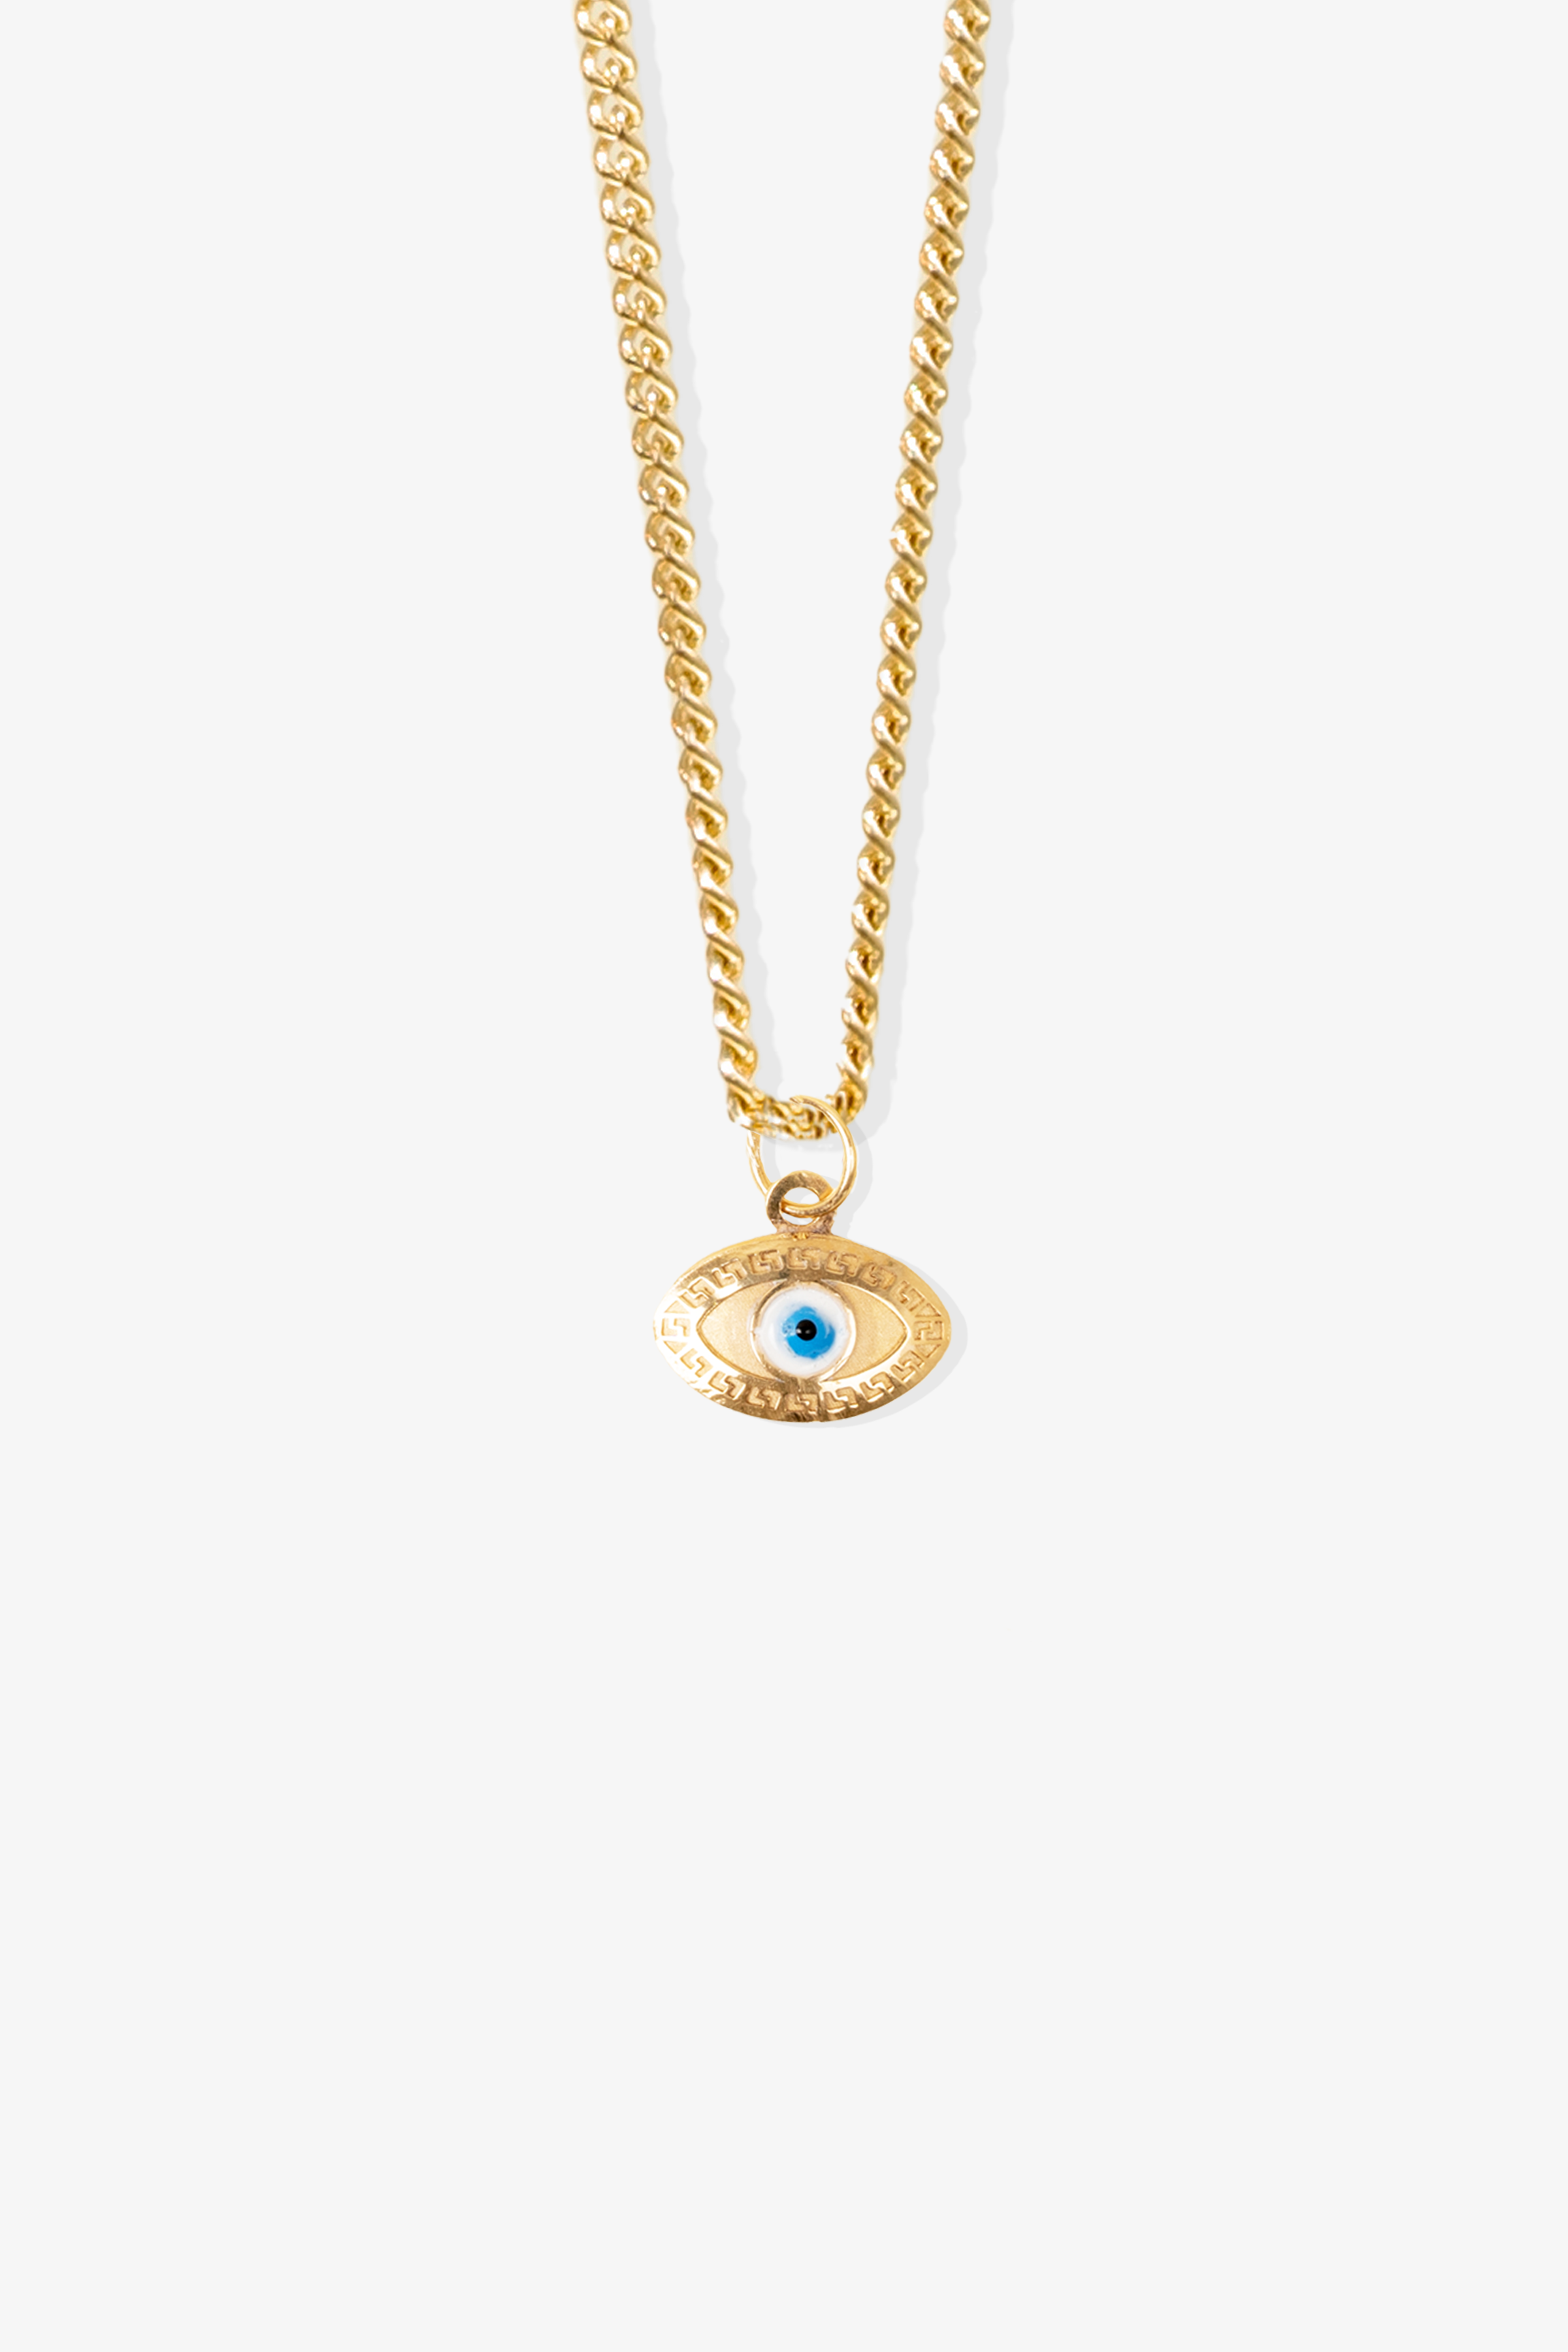 Evil Eye Pendant 14k REAL Gold